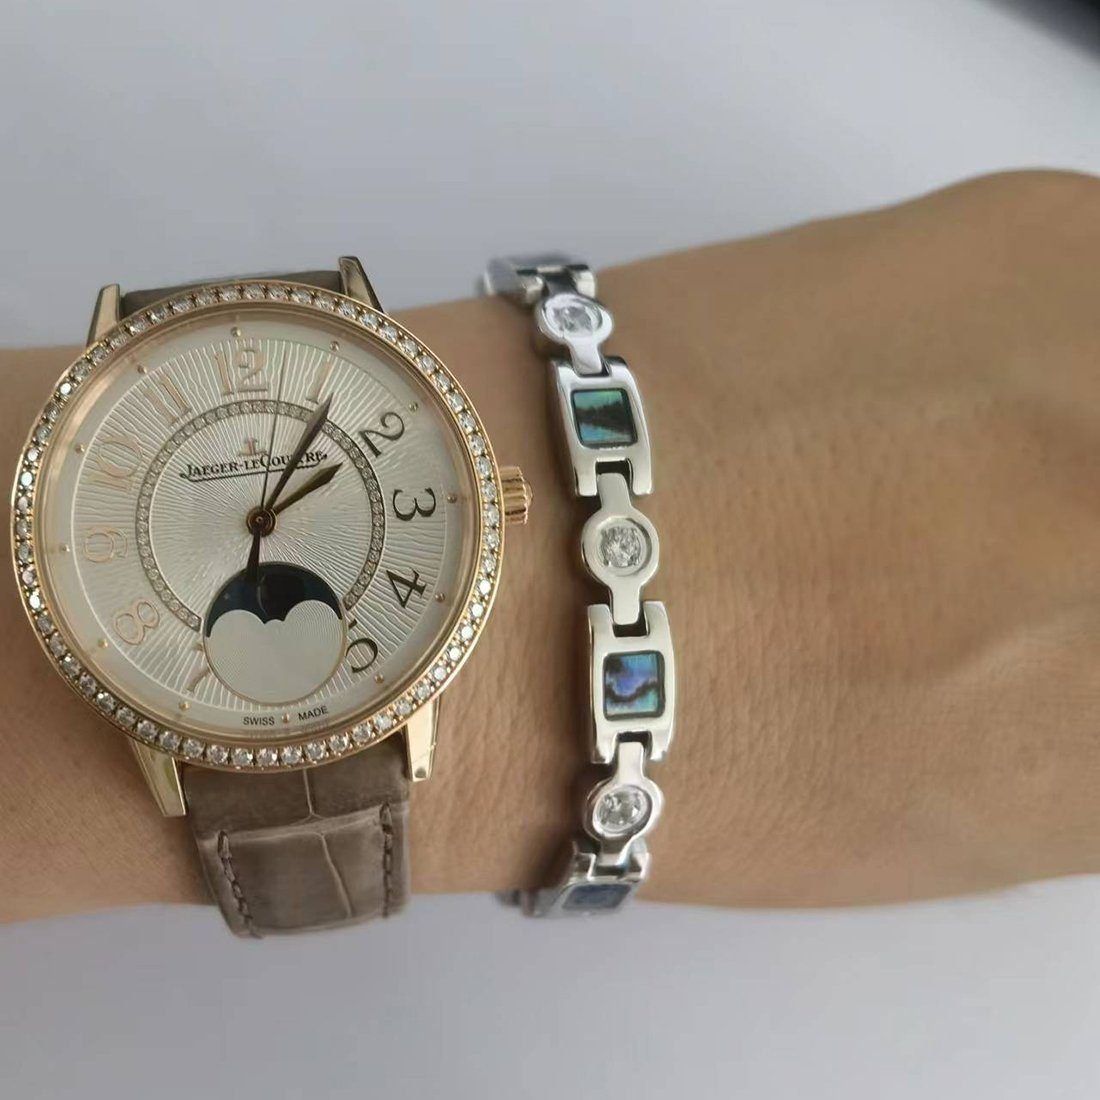 Edelstahl-Armband,Magnetarmband silvery Gliederarmband Bettelarmband Armband, Damen Haiaveng